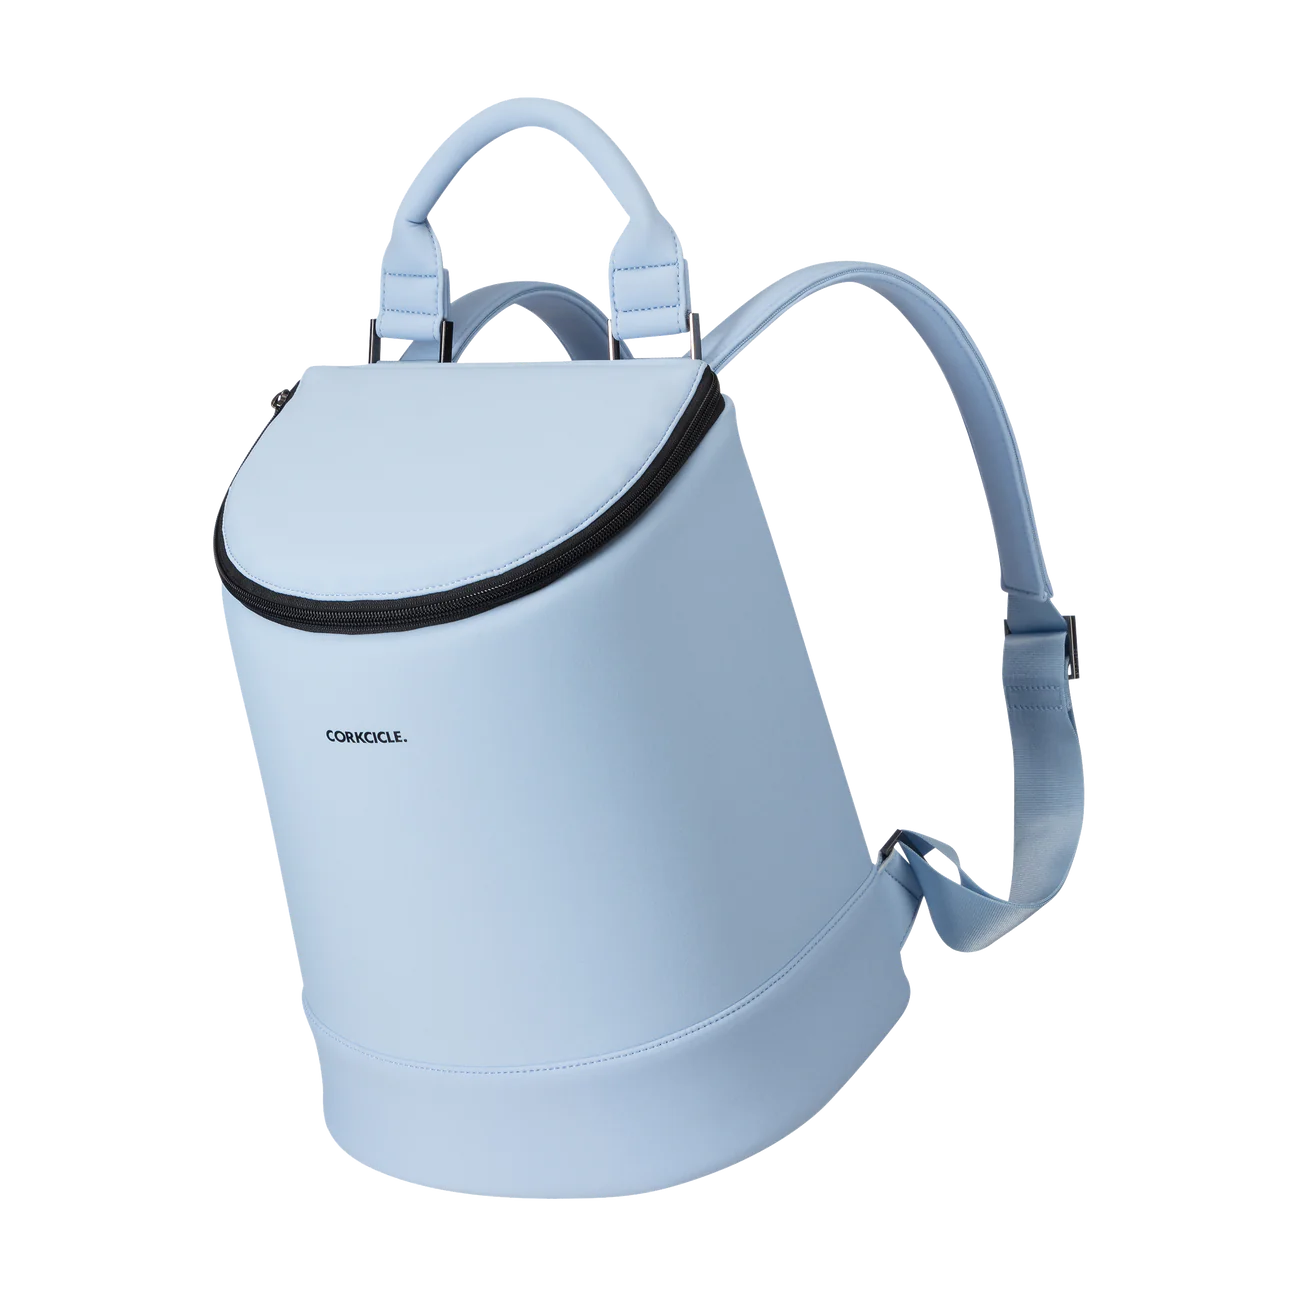 Corkcicle Eola Bucket Bag